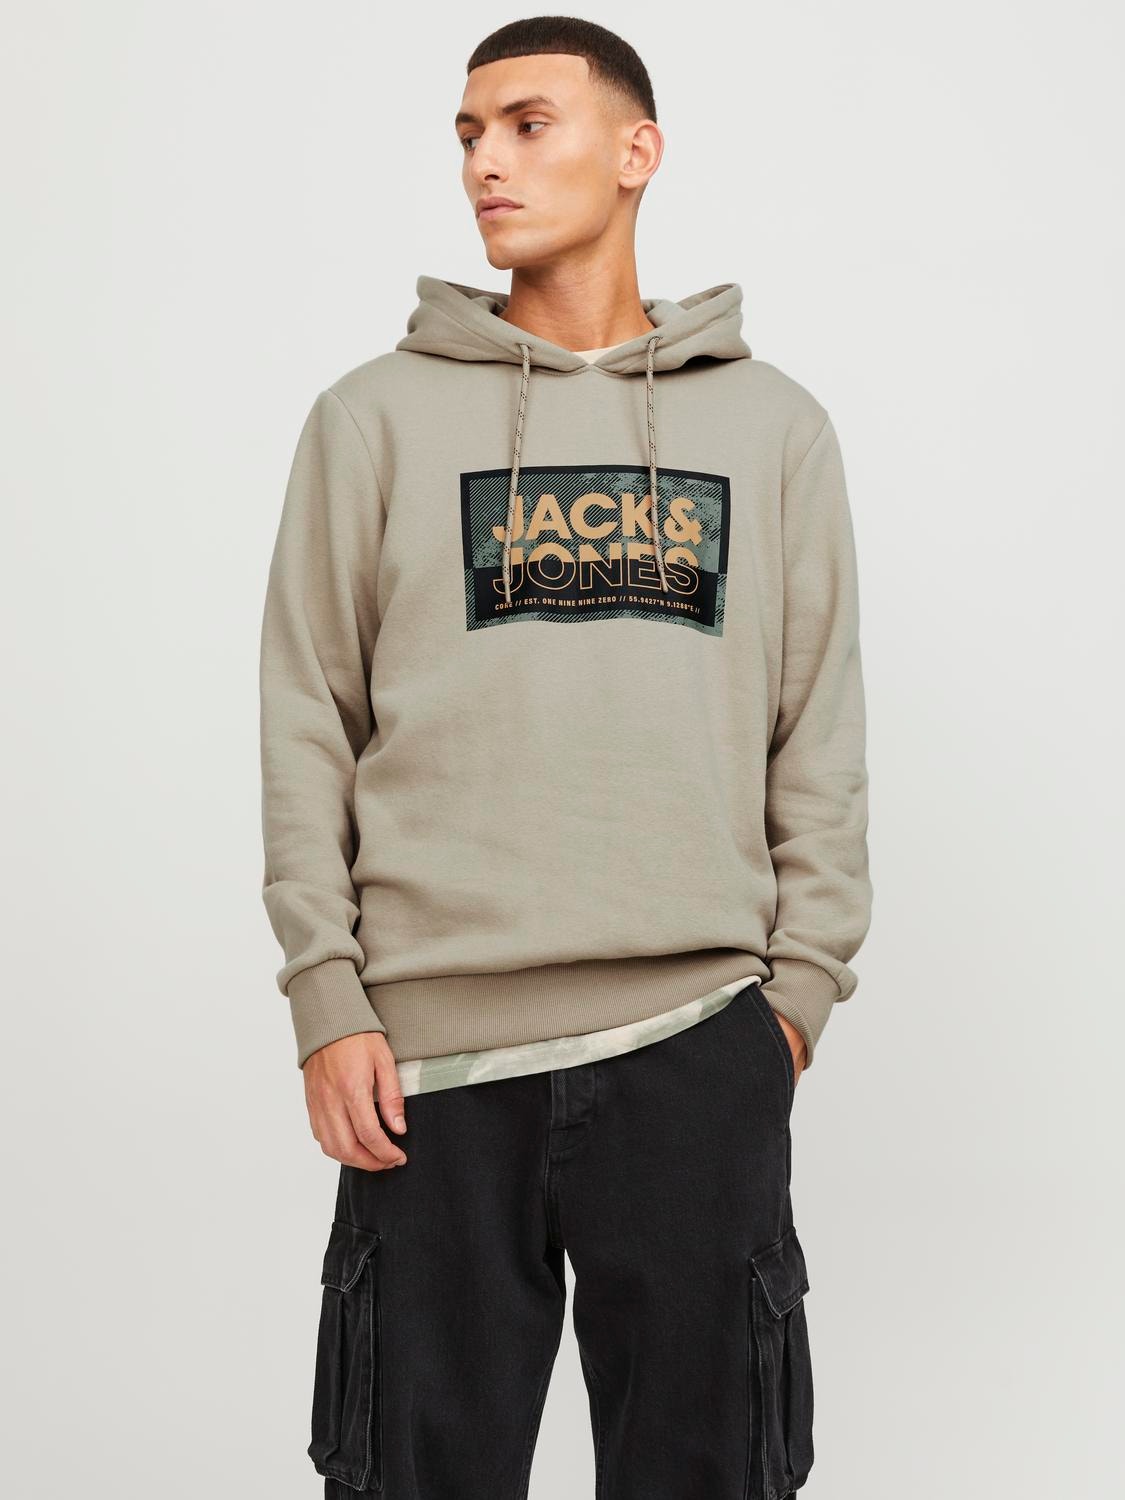 Jack & Jones Logo Huppari -Crockery - 12253443